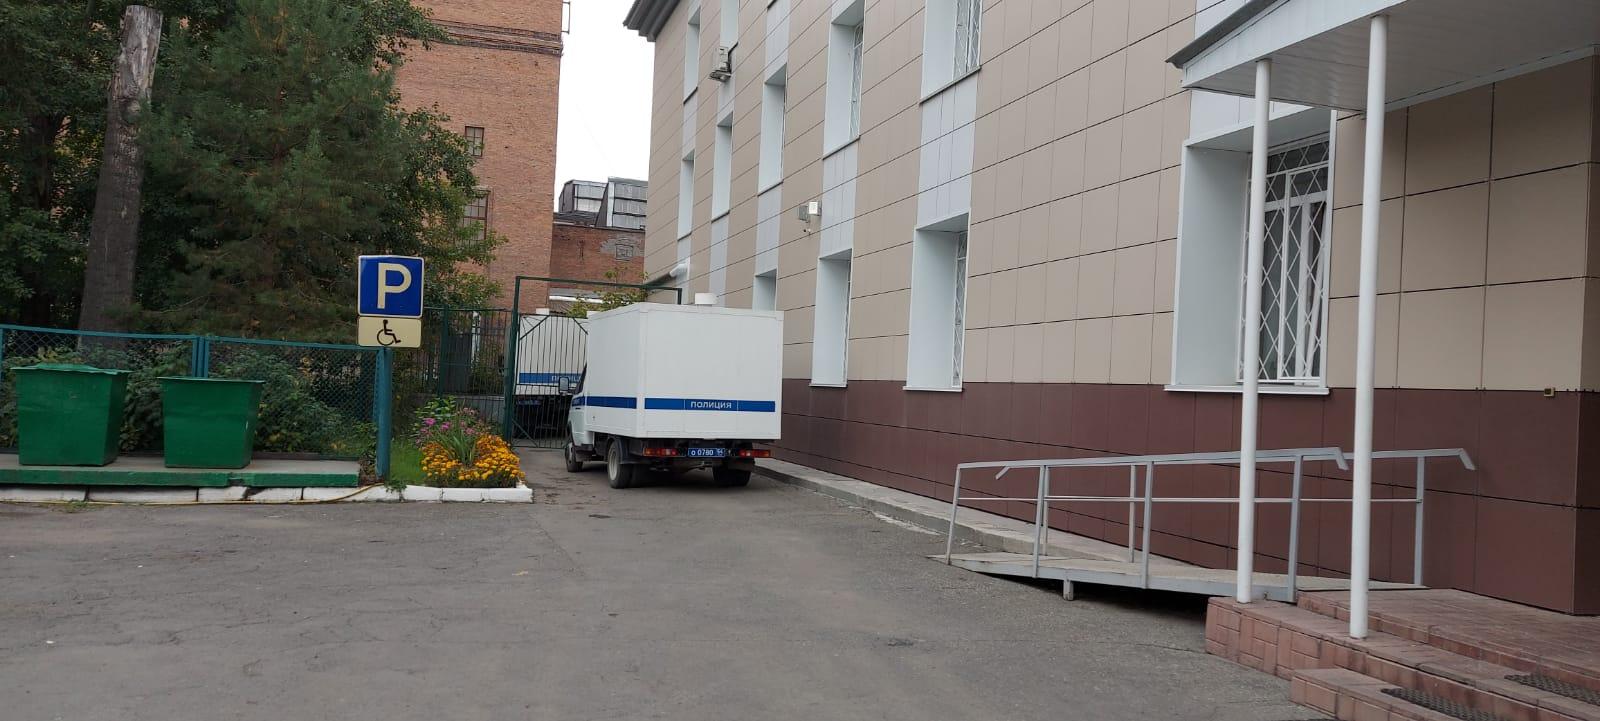 Фото Камчатское дело: как в Новосибирске арестовывали директора турфирмы 